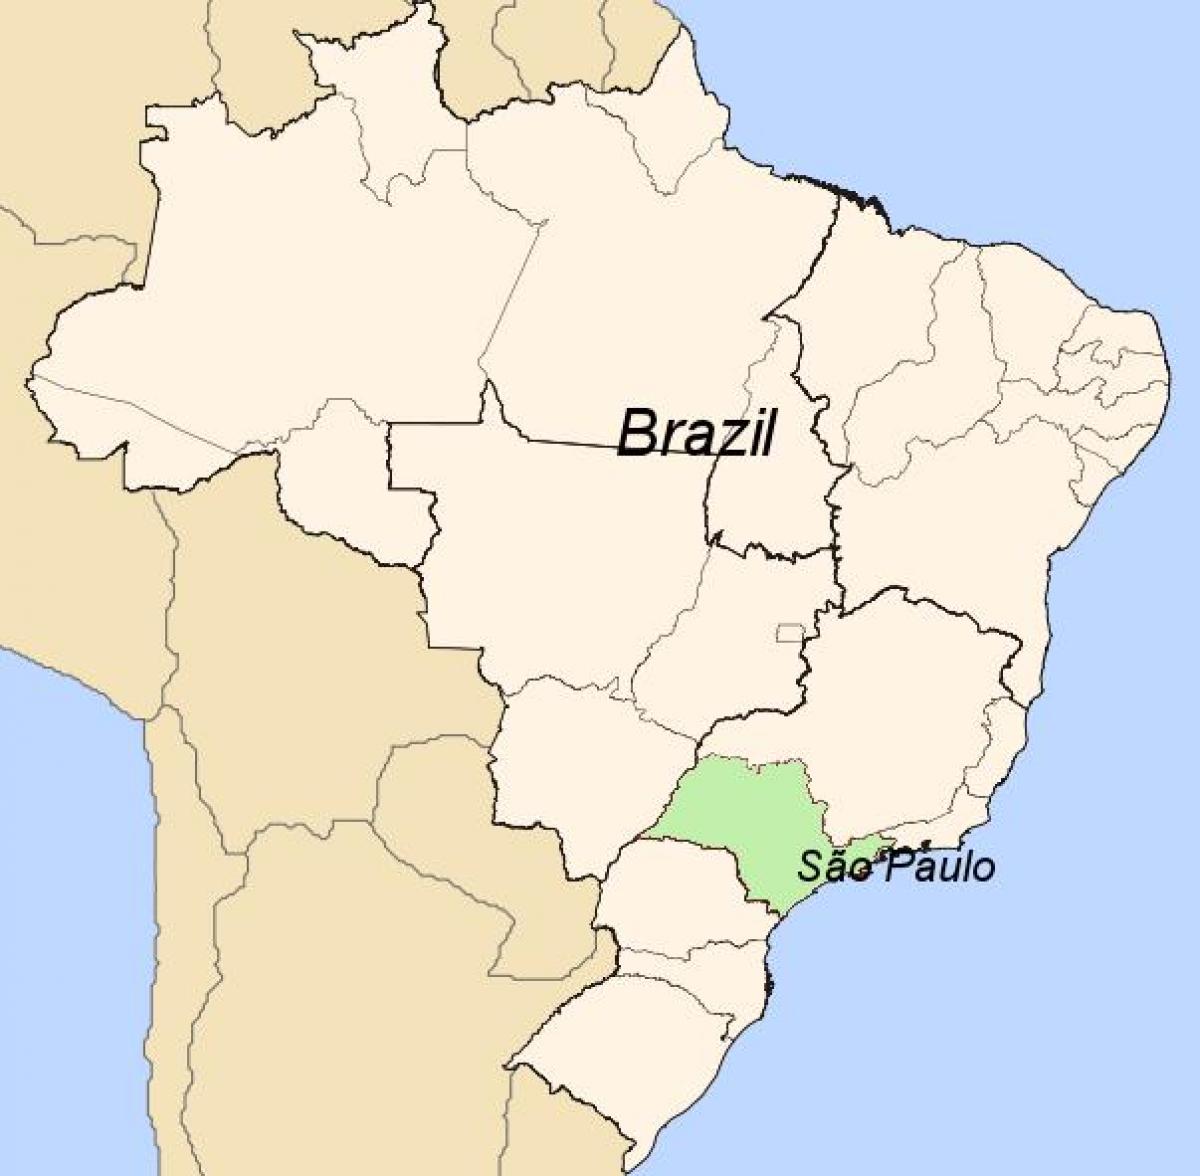 Kaart van São Paulo in Brasilië